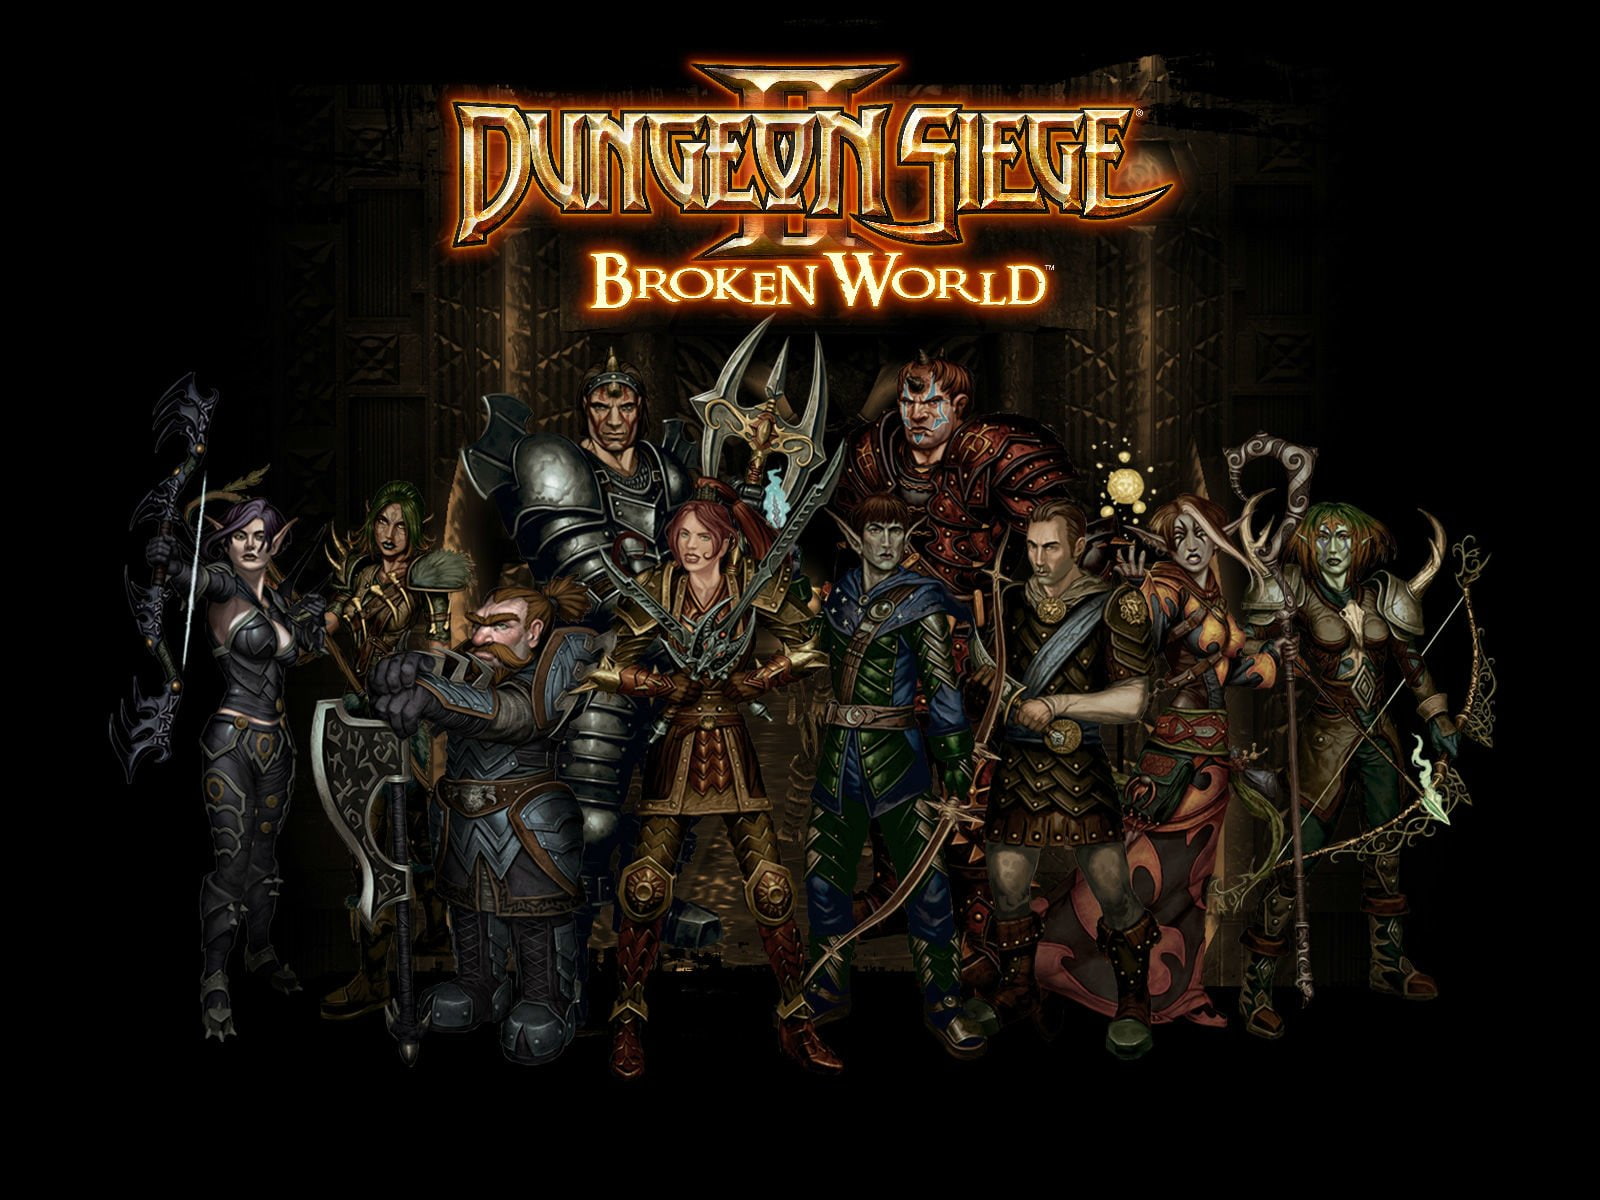 Dungeon Siege, Dungeon Siege II